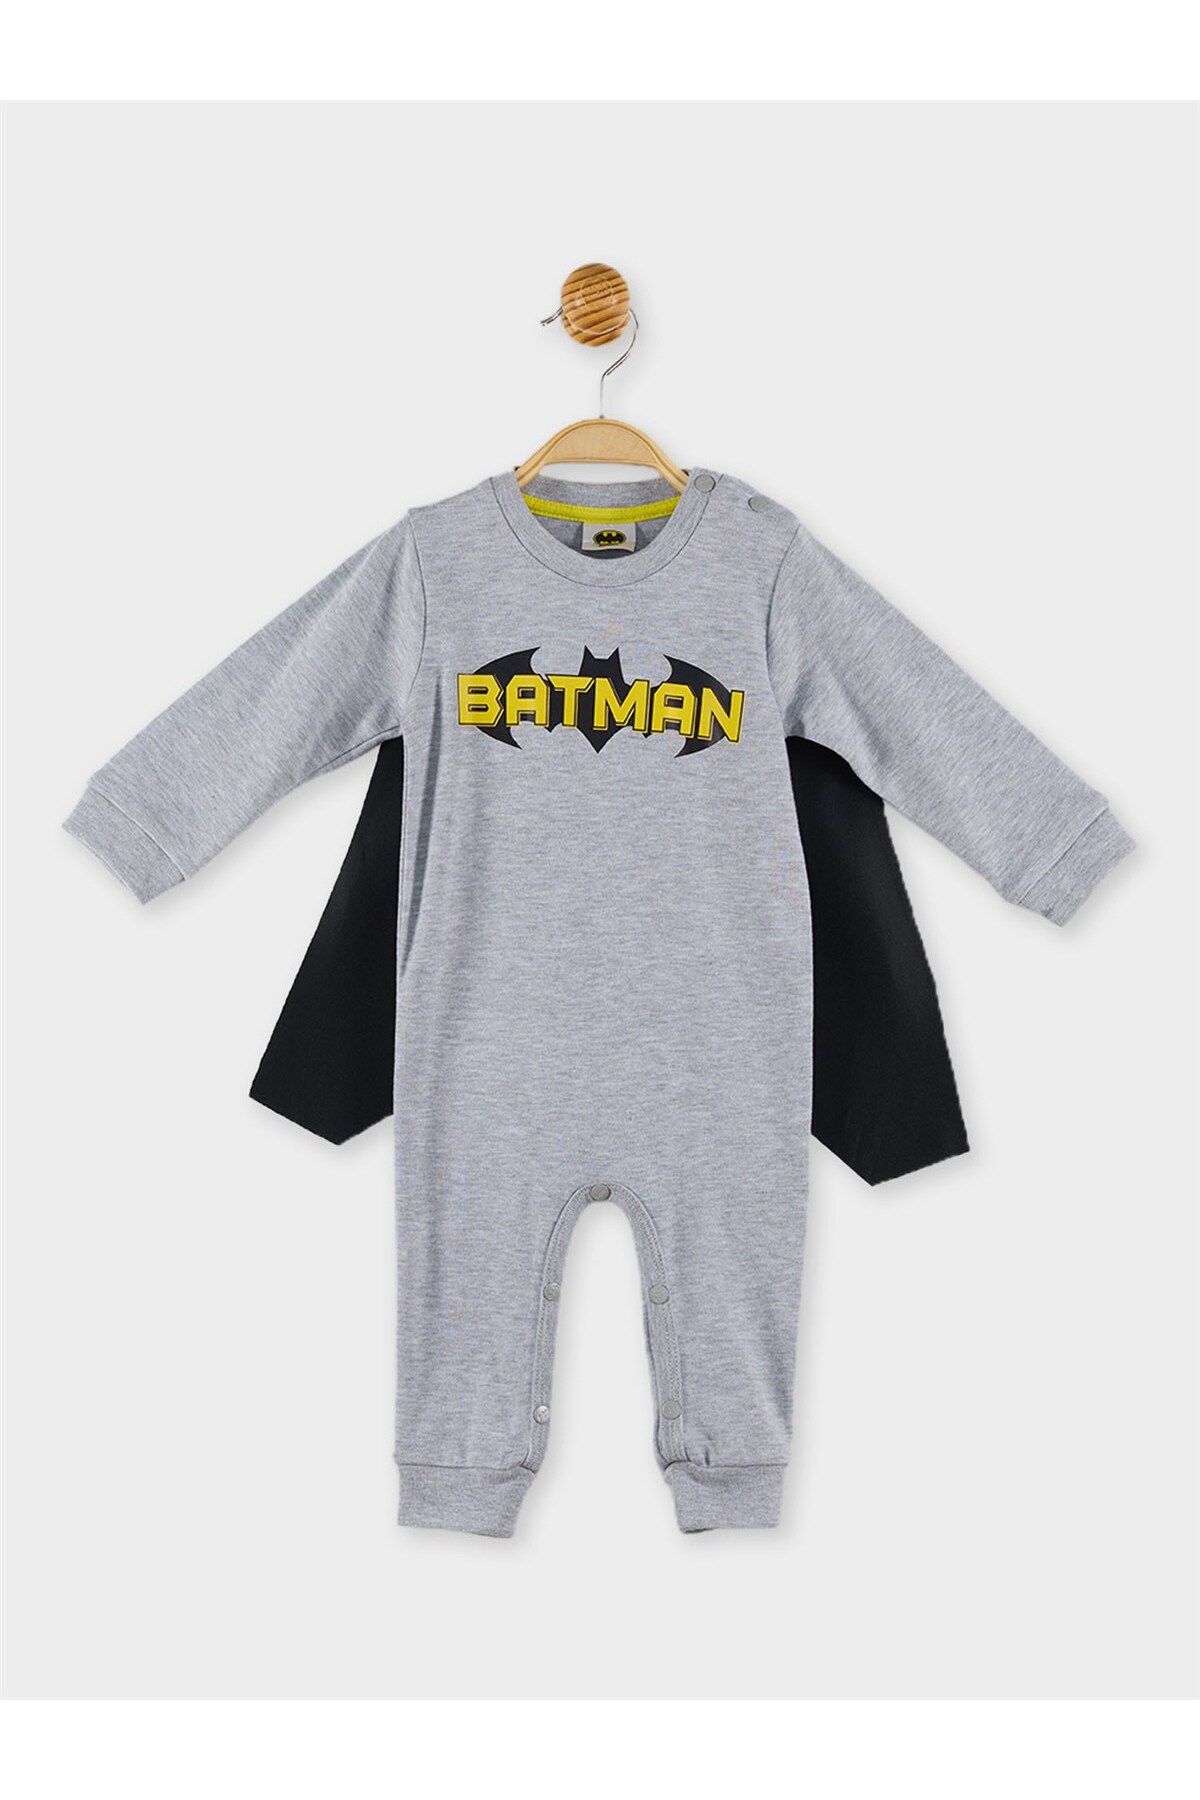 Batman Lisanslı Erkek Bebek Pelerinli Tulum 20373